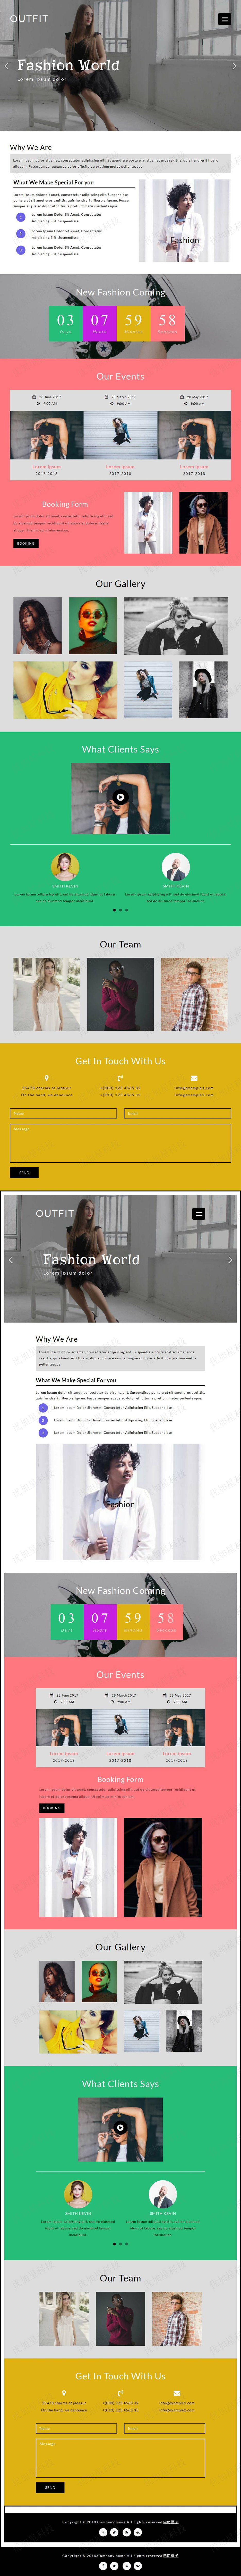 世界服装品牌时尚网站模板下载_优加星网络科技